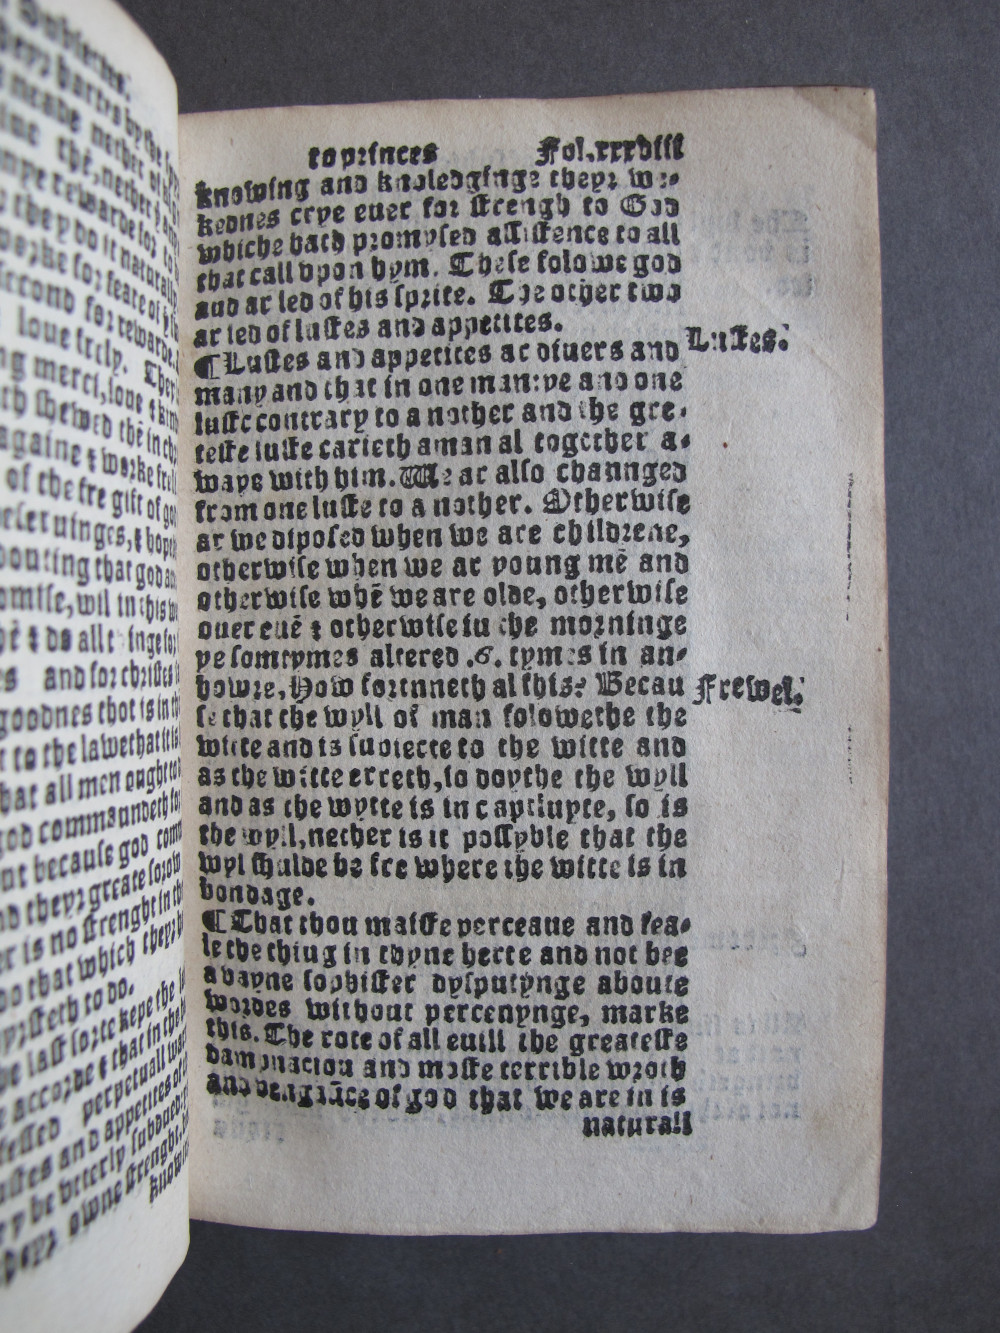 1 Folio E6 recto